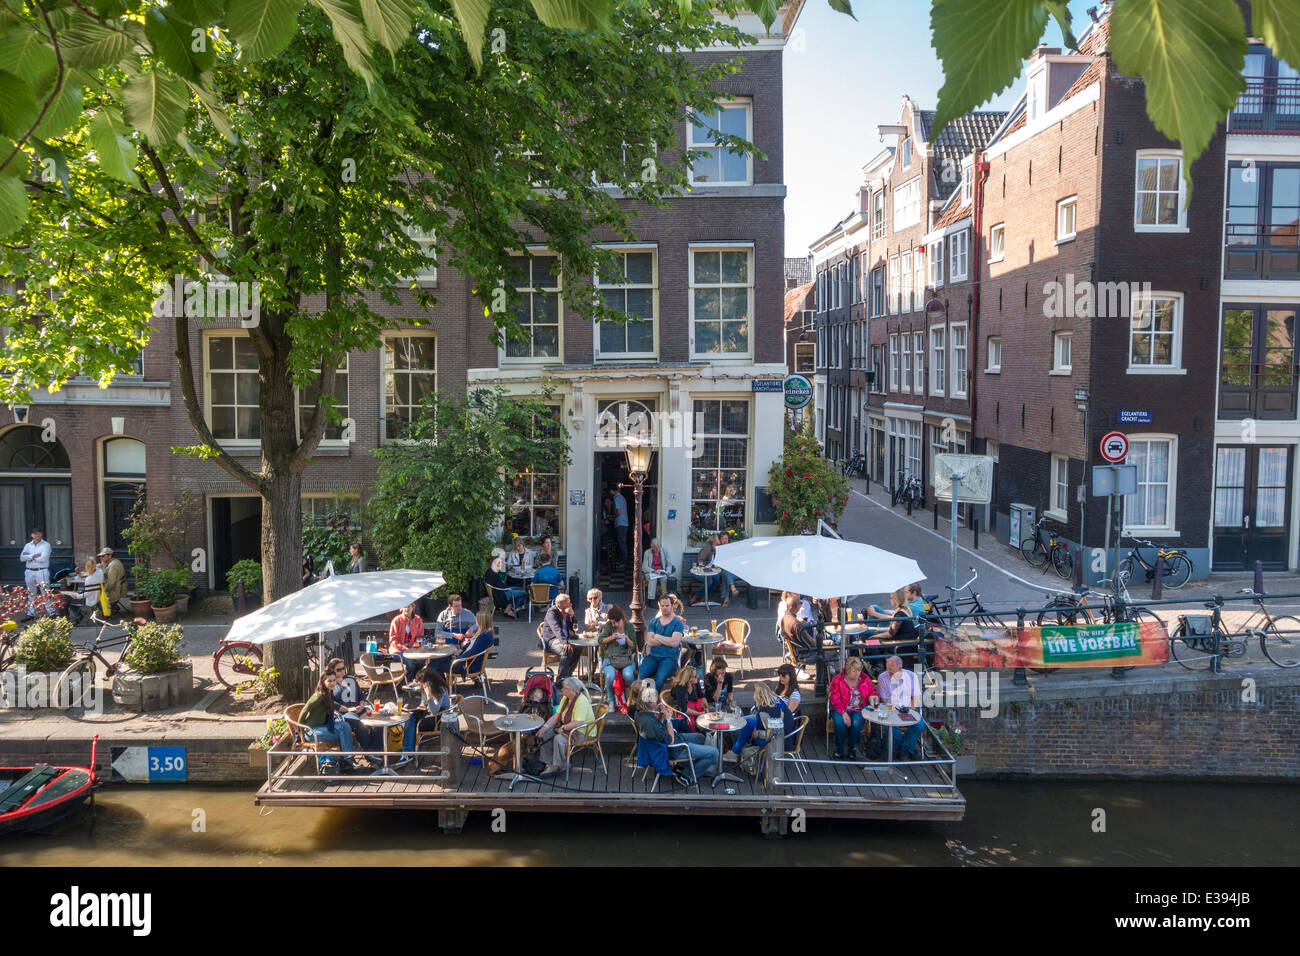 Amsterdam Cafe 't la société Smalle sur l'Egelantiersgracht dans le quartier du Jordaan, avec sa terrasse unique sur les pieux dans le canal. Banque D'Images